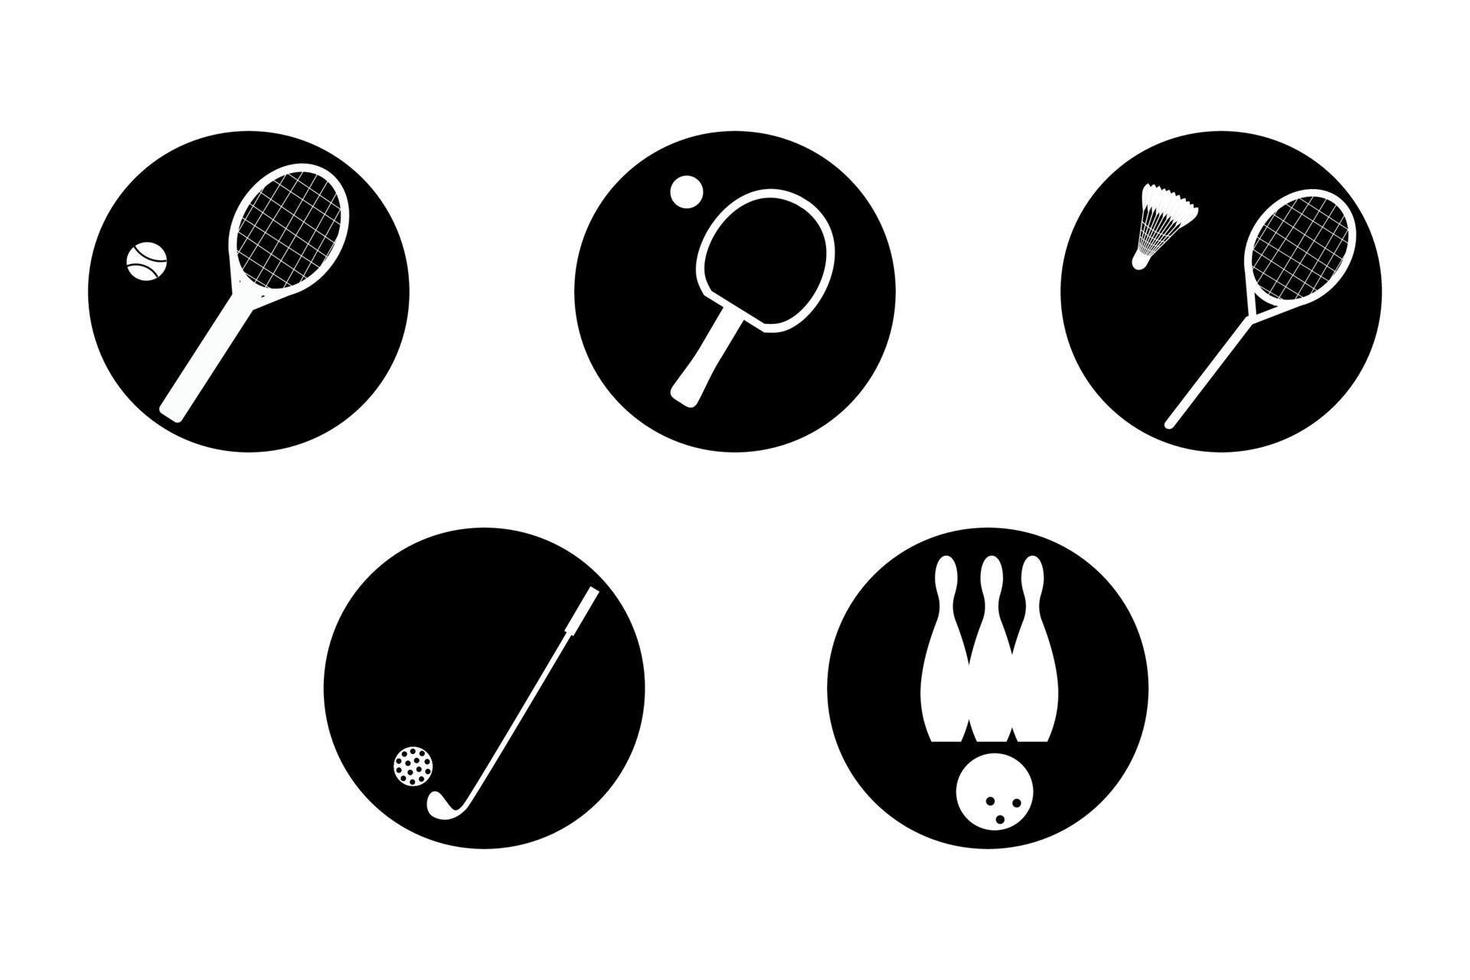 Symbole für tragbare Geräte. sportkonzept mit bällen und spielgegenständen. Fitnessgeräte, Vektorillustration vektor